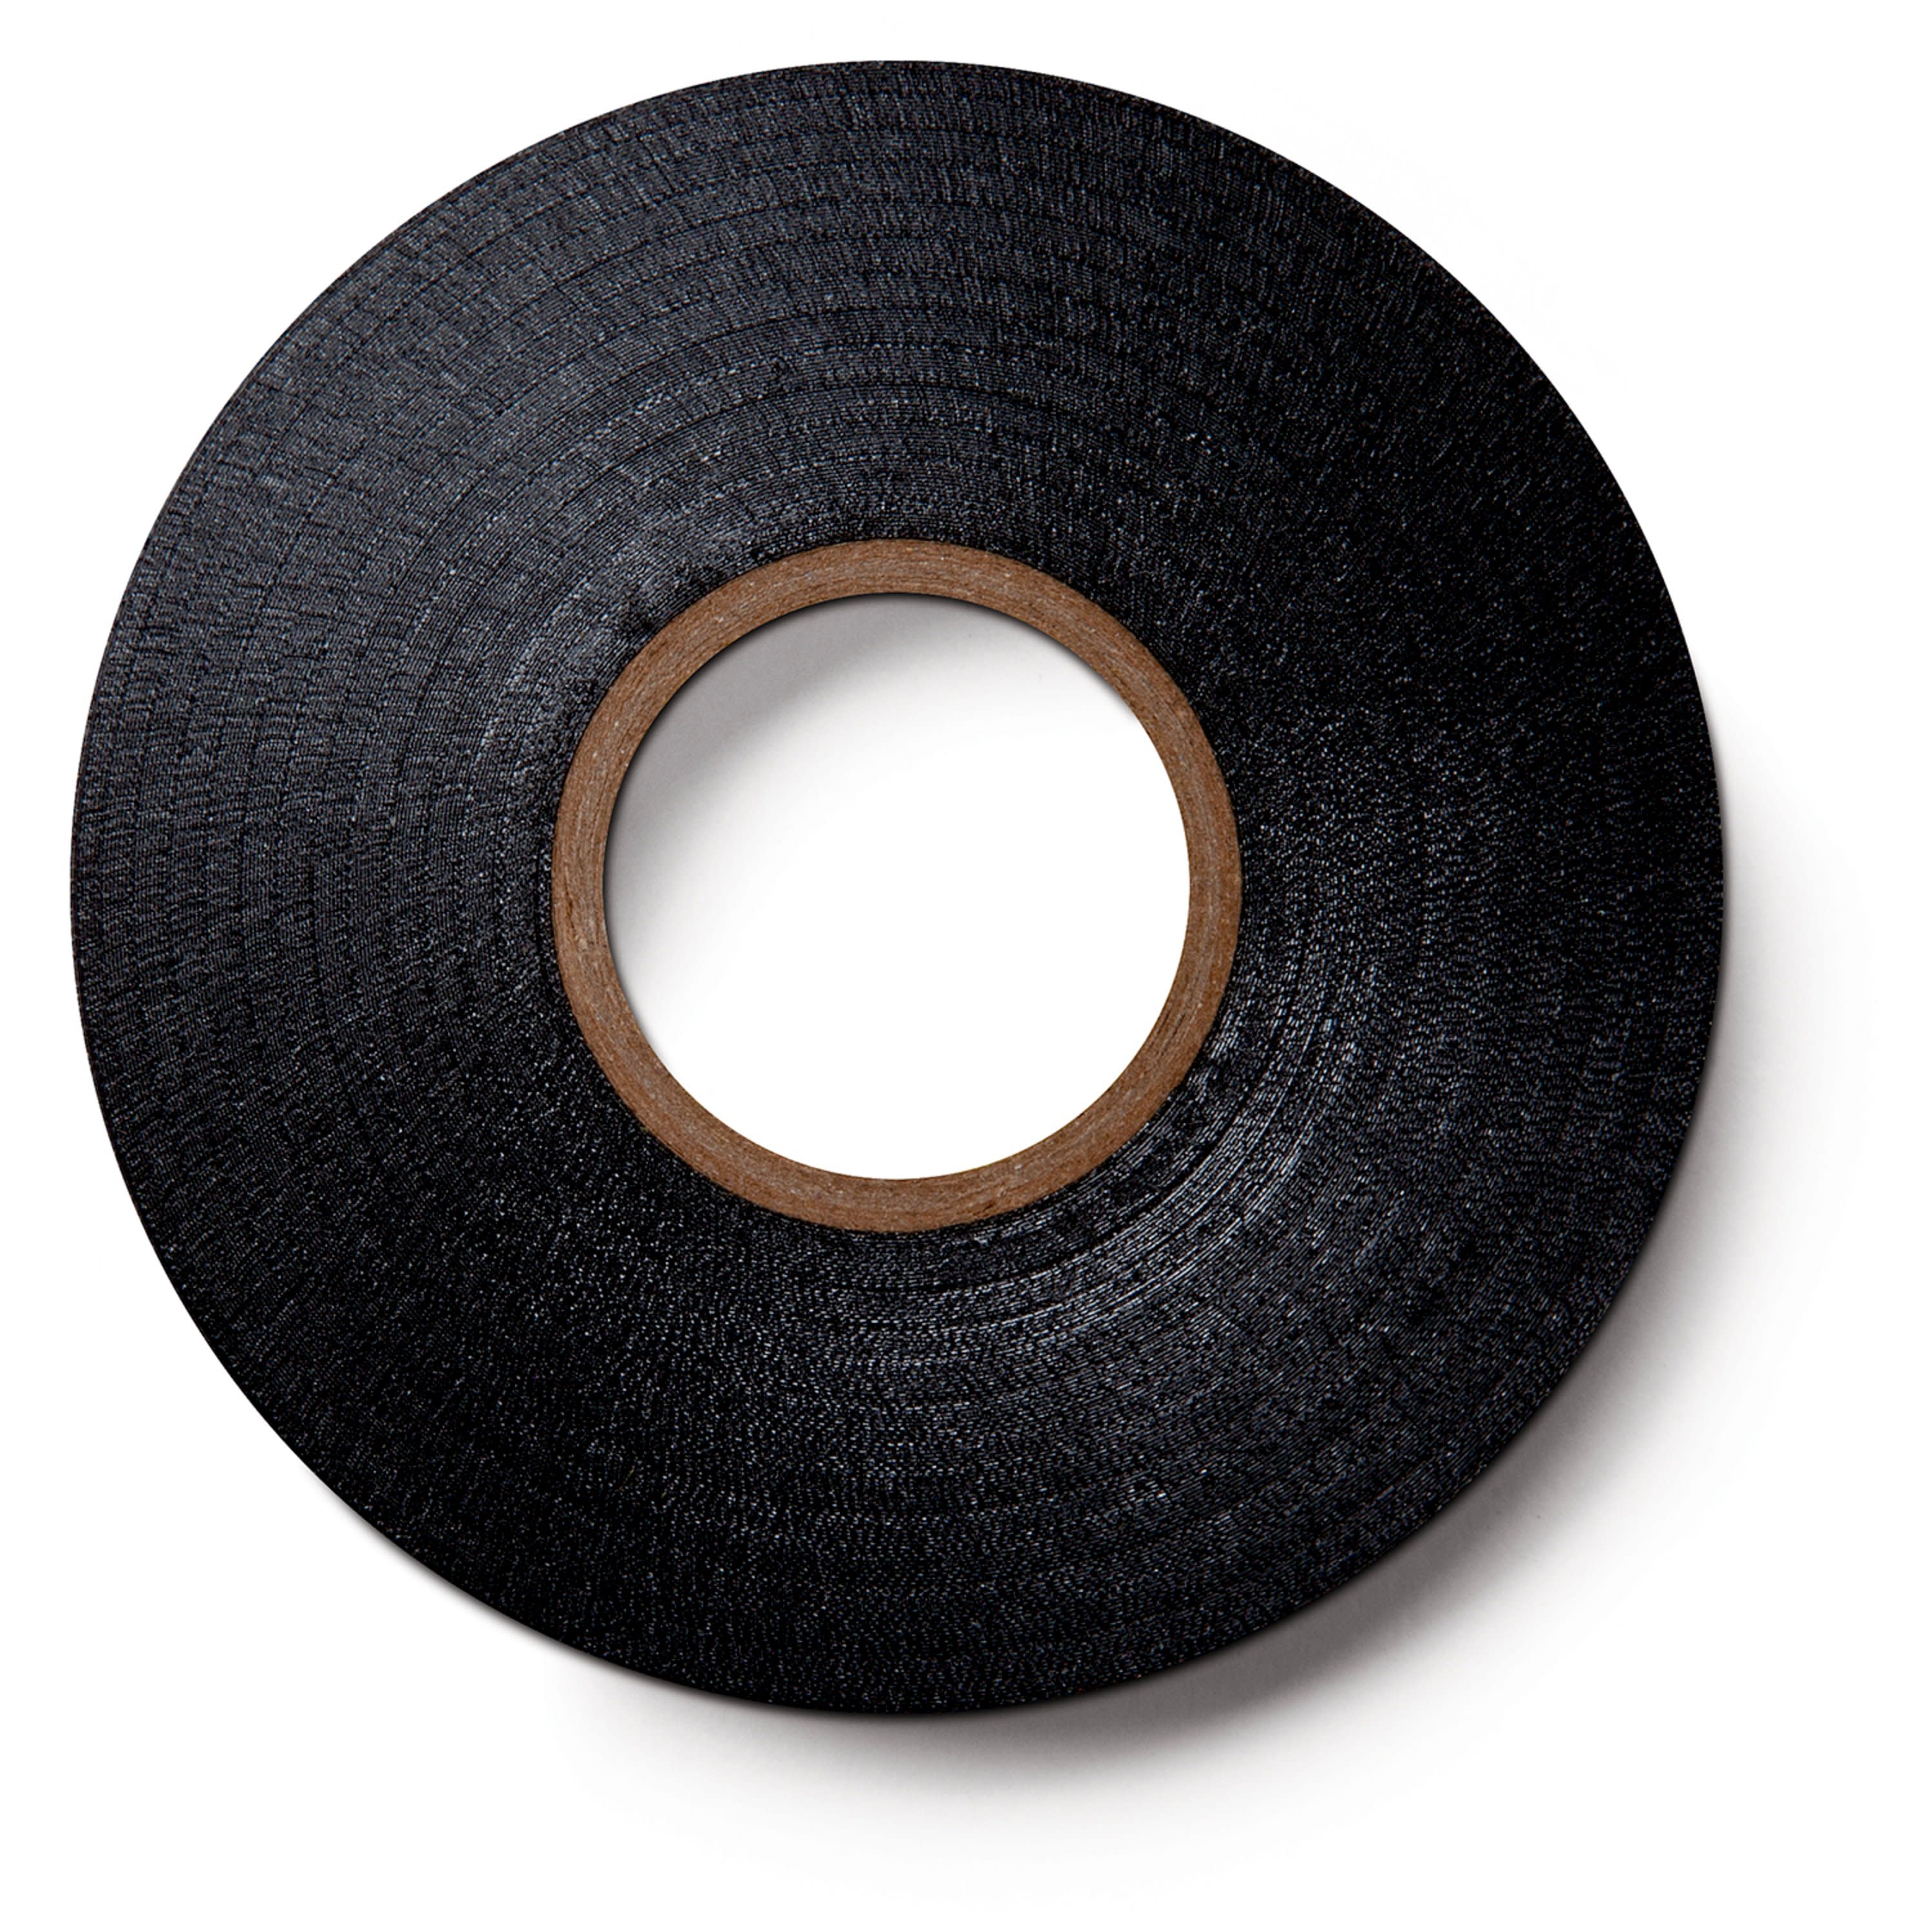 Scotch Super 88 0.75-in x 66-ft Vinyl Electrical Tape Black in the